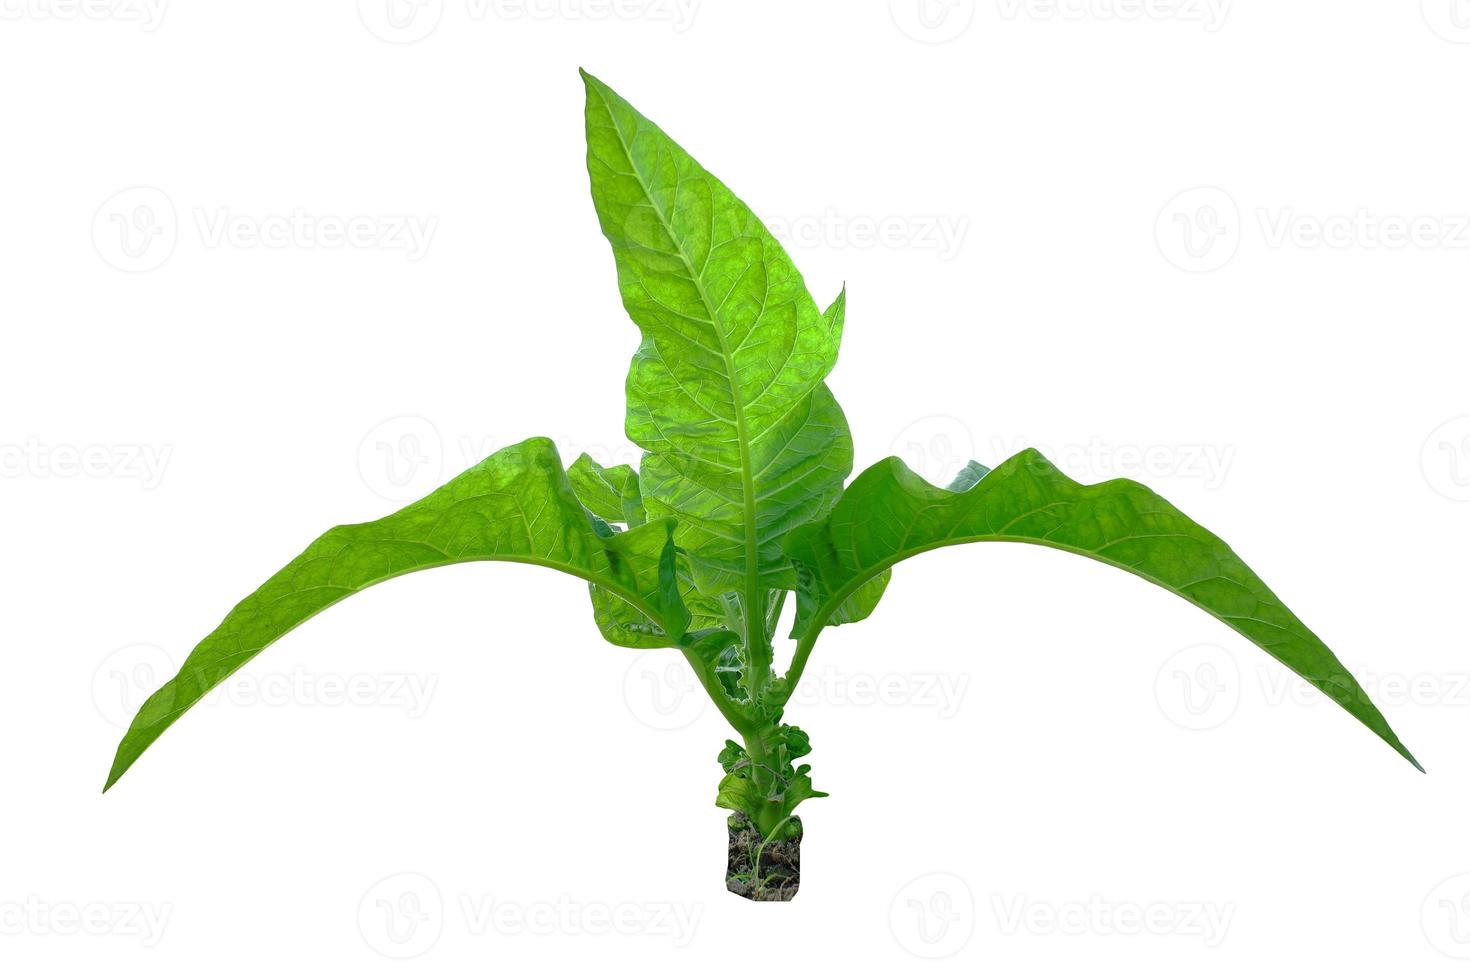 brasilianska tobaksblad på vit bakgrund. nicotiana rustica, eller aztekisk tobak, stark tobak, är en regnskogsväxt i familjen solanaceae. foto